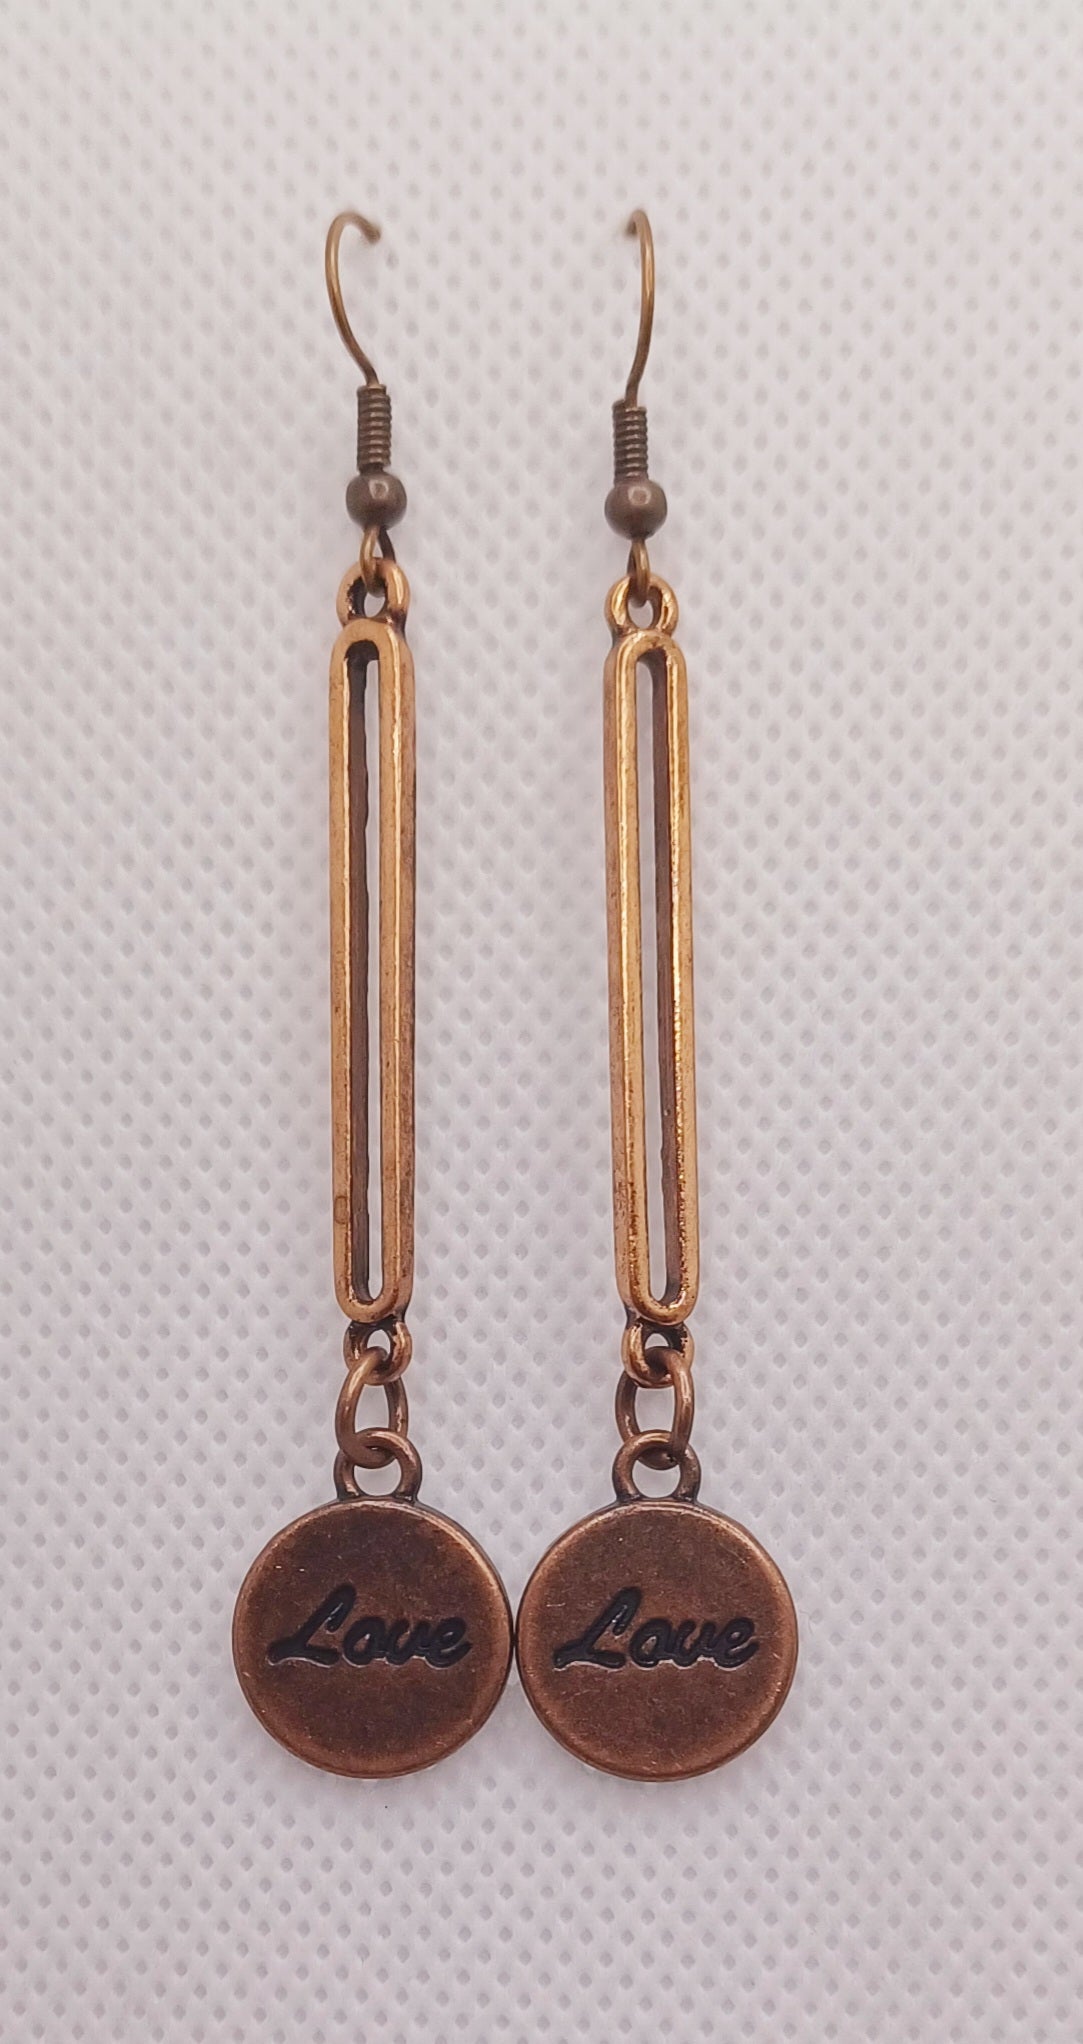 Fun Antique Copper "Love" Drop Earrings